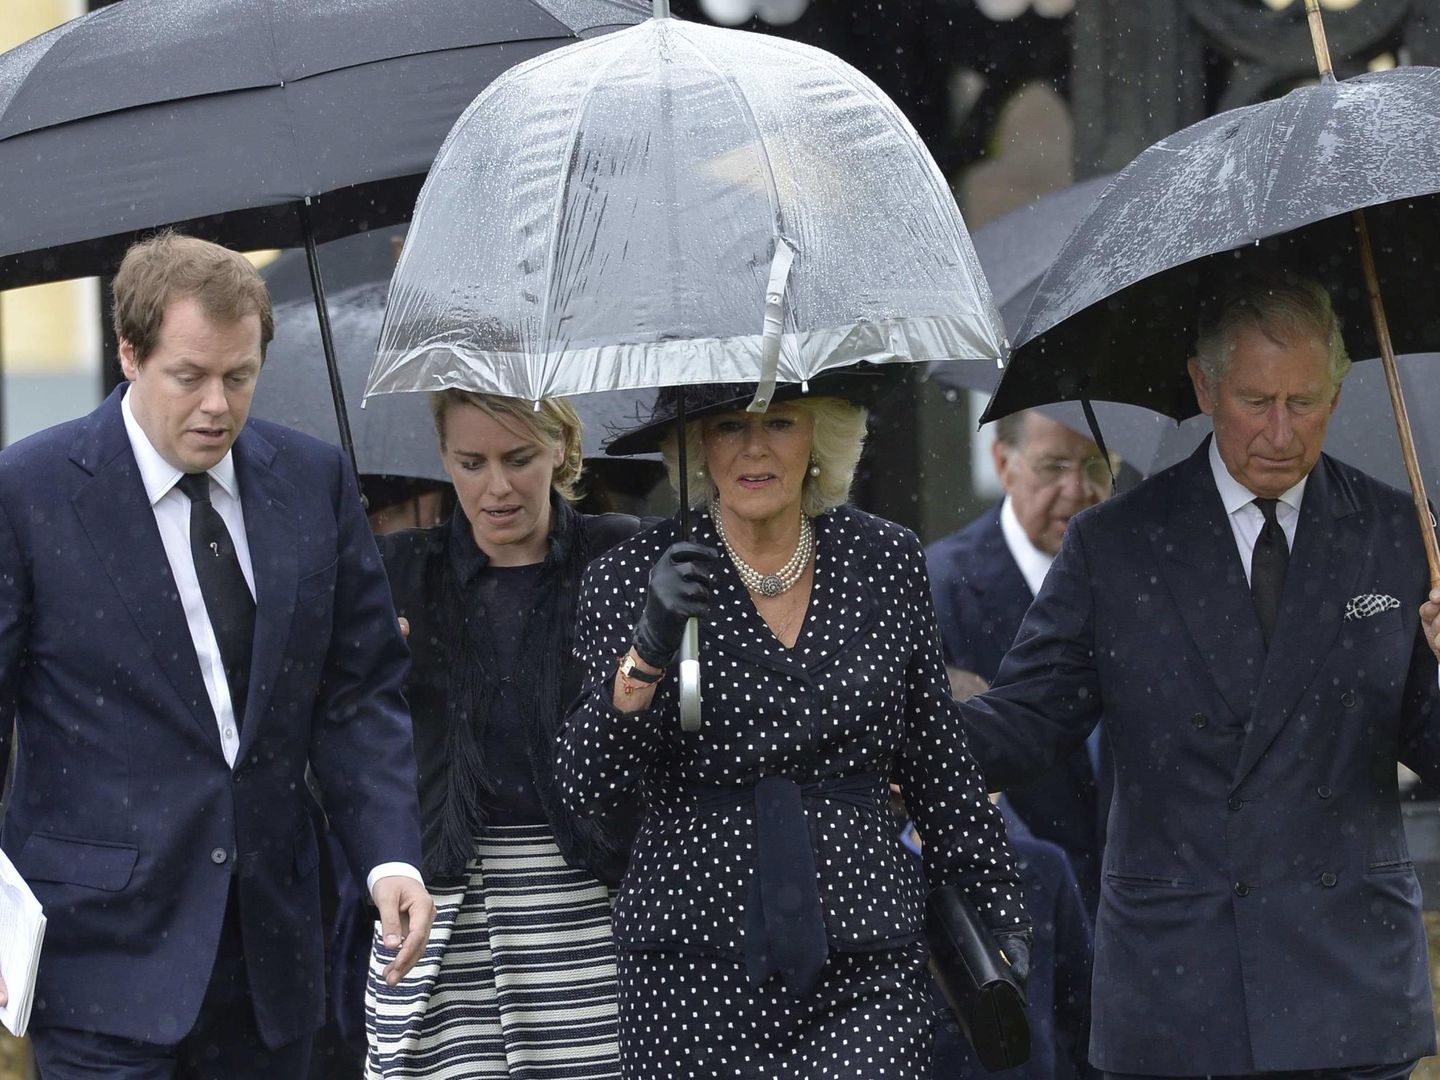 Carlos de Inglaterra y Camilla Parker Bowles con los dos hijos de esta, Tom Parker Bowles y Laura Lopes, en una imagen de archivo. (Reuters)